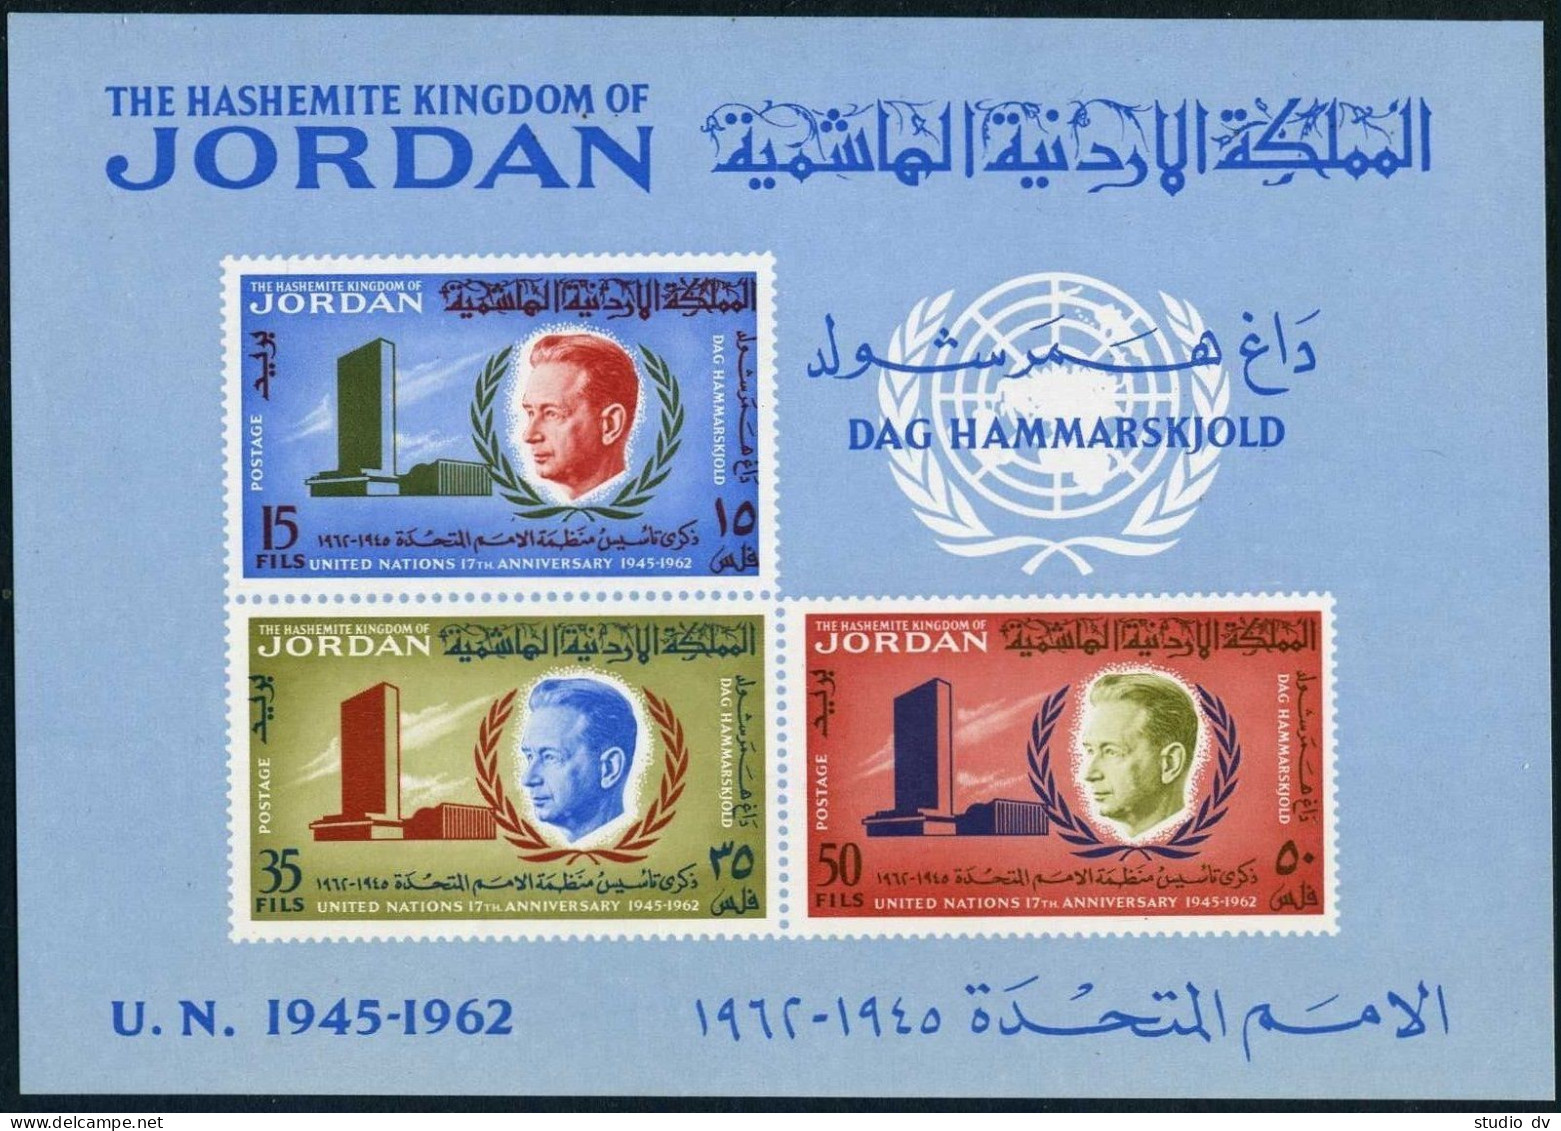 Jordan 385-387,387a, MNH. Mi 375-377,Bl.3. Dag Hammarskjold,UN Headquarters,1963 - Jordanien